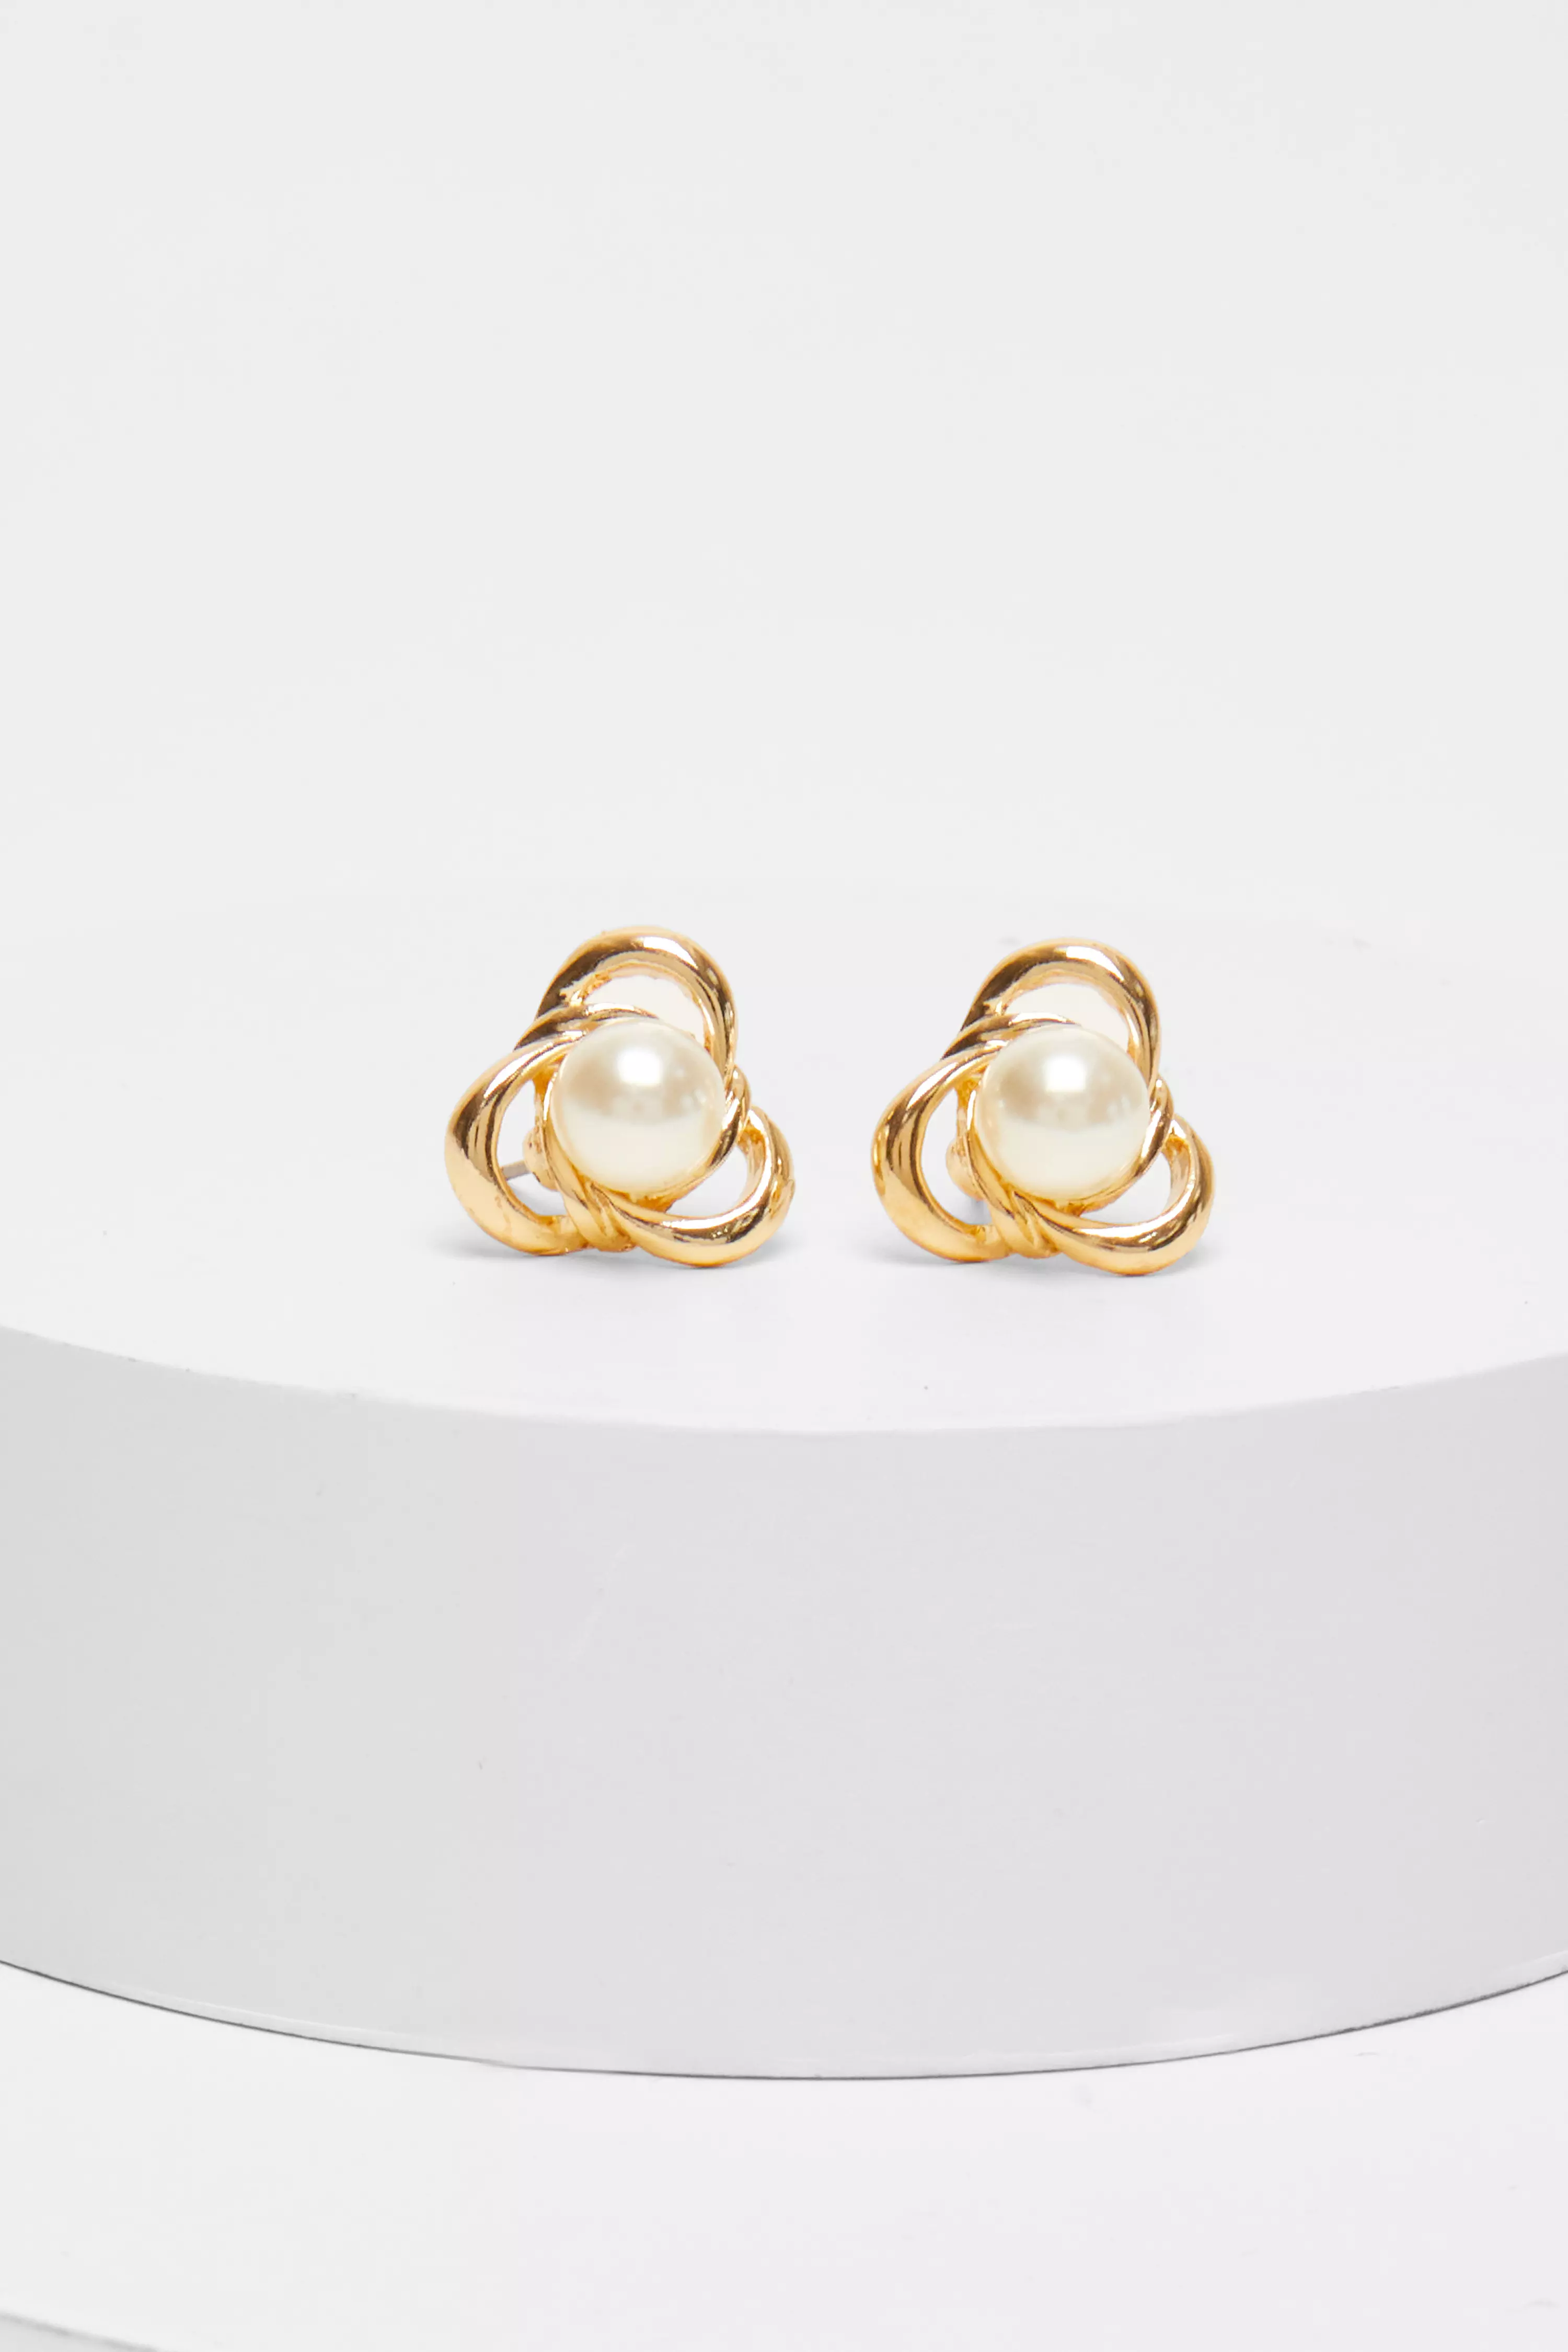 Gold Swirl Pearl Stud Earrings